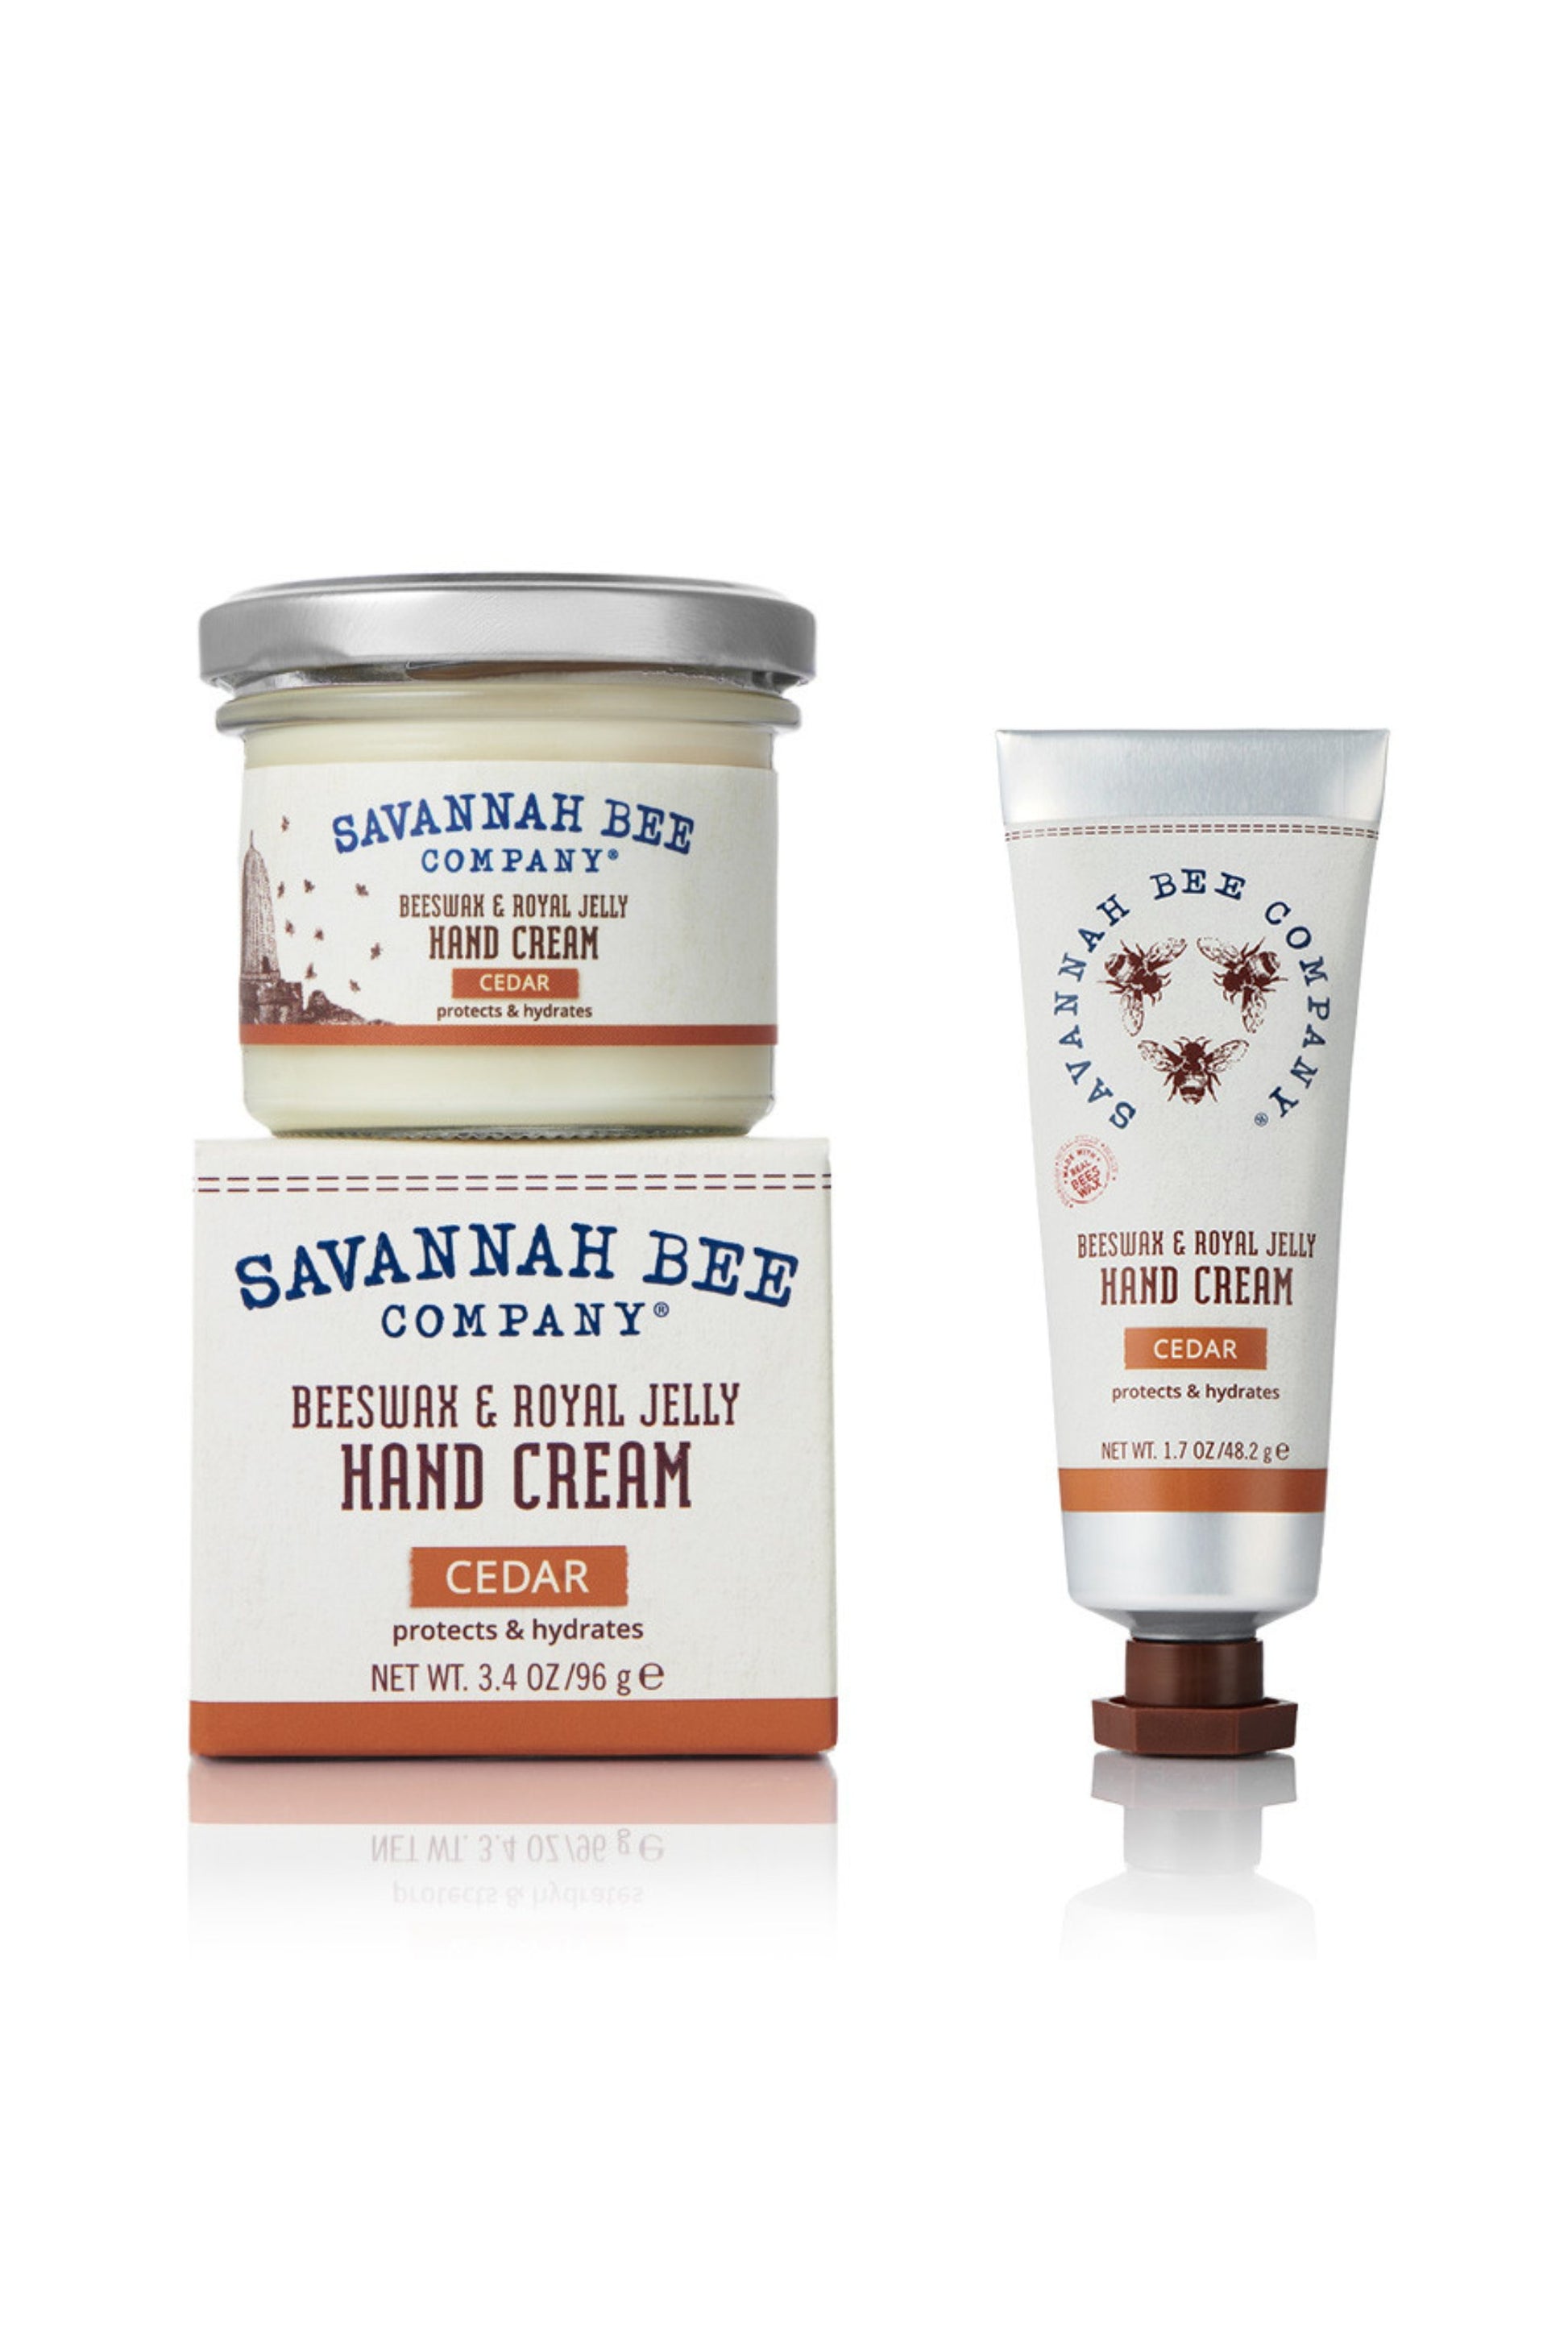 Beeswax & Royal Jelly Cedar Hand Cream Jar and Tube